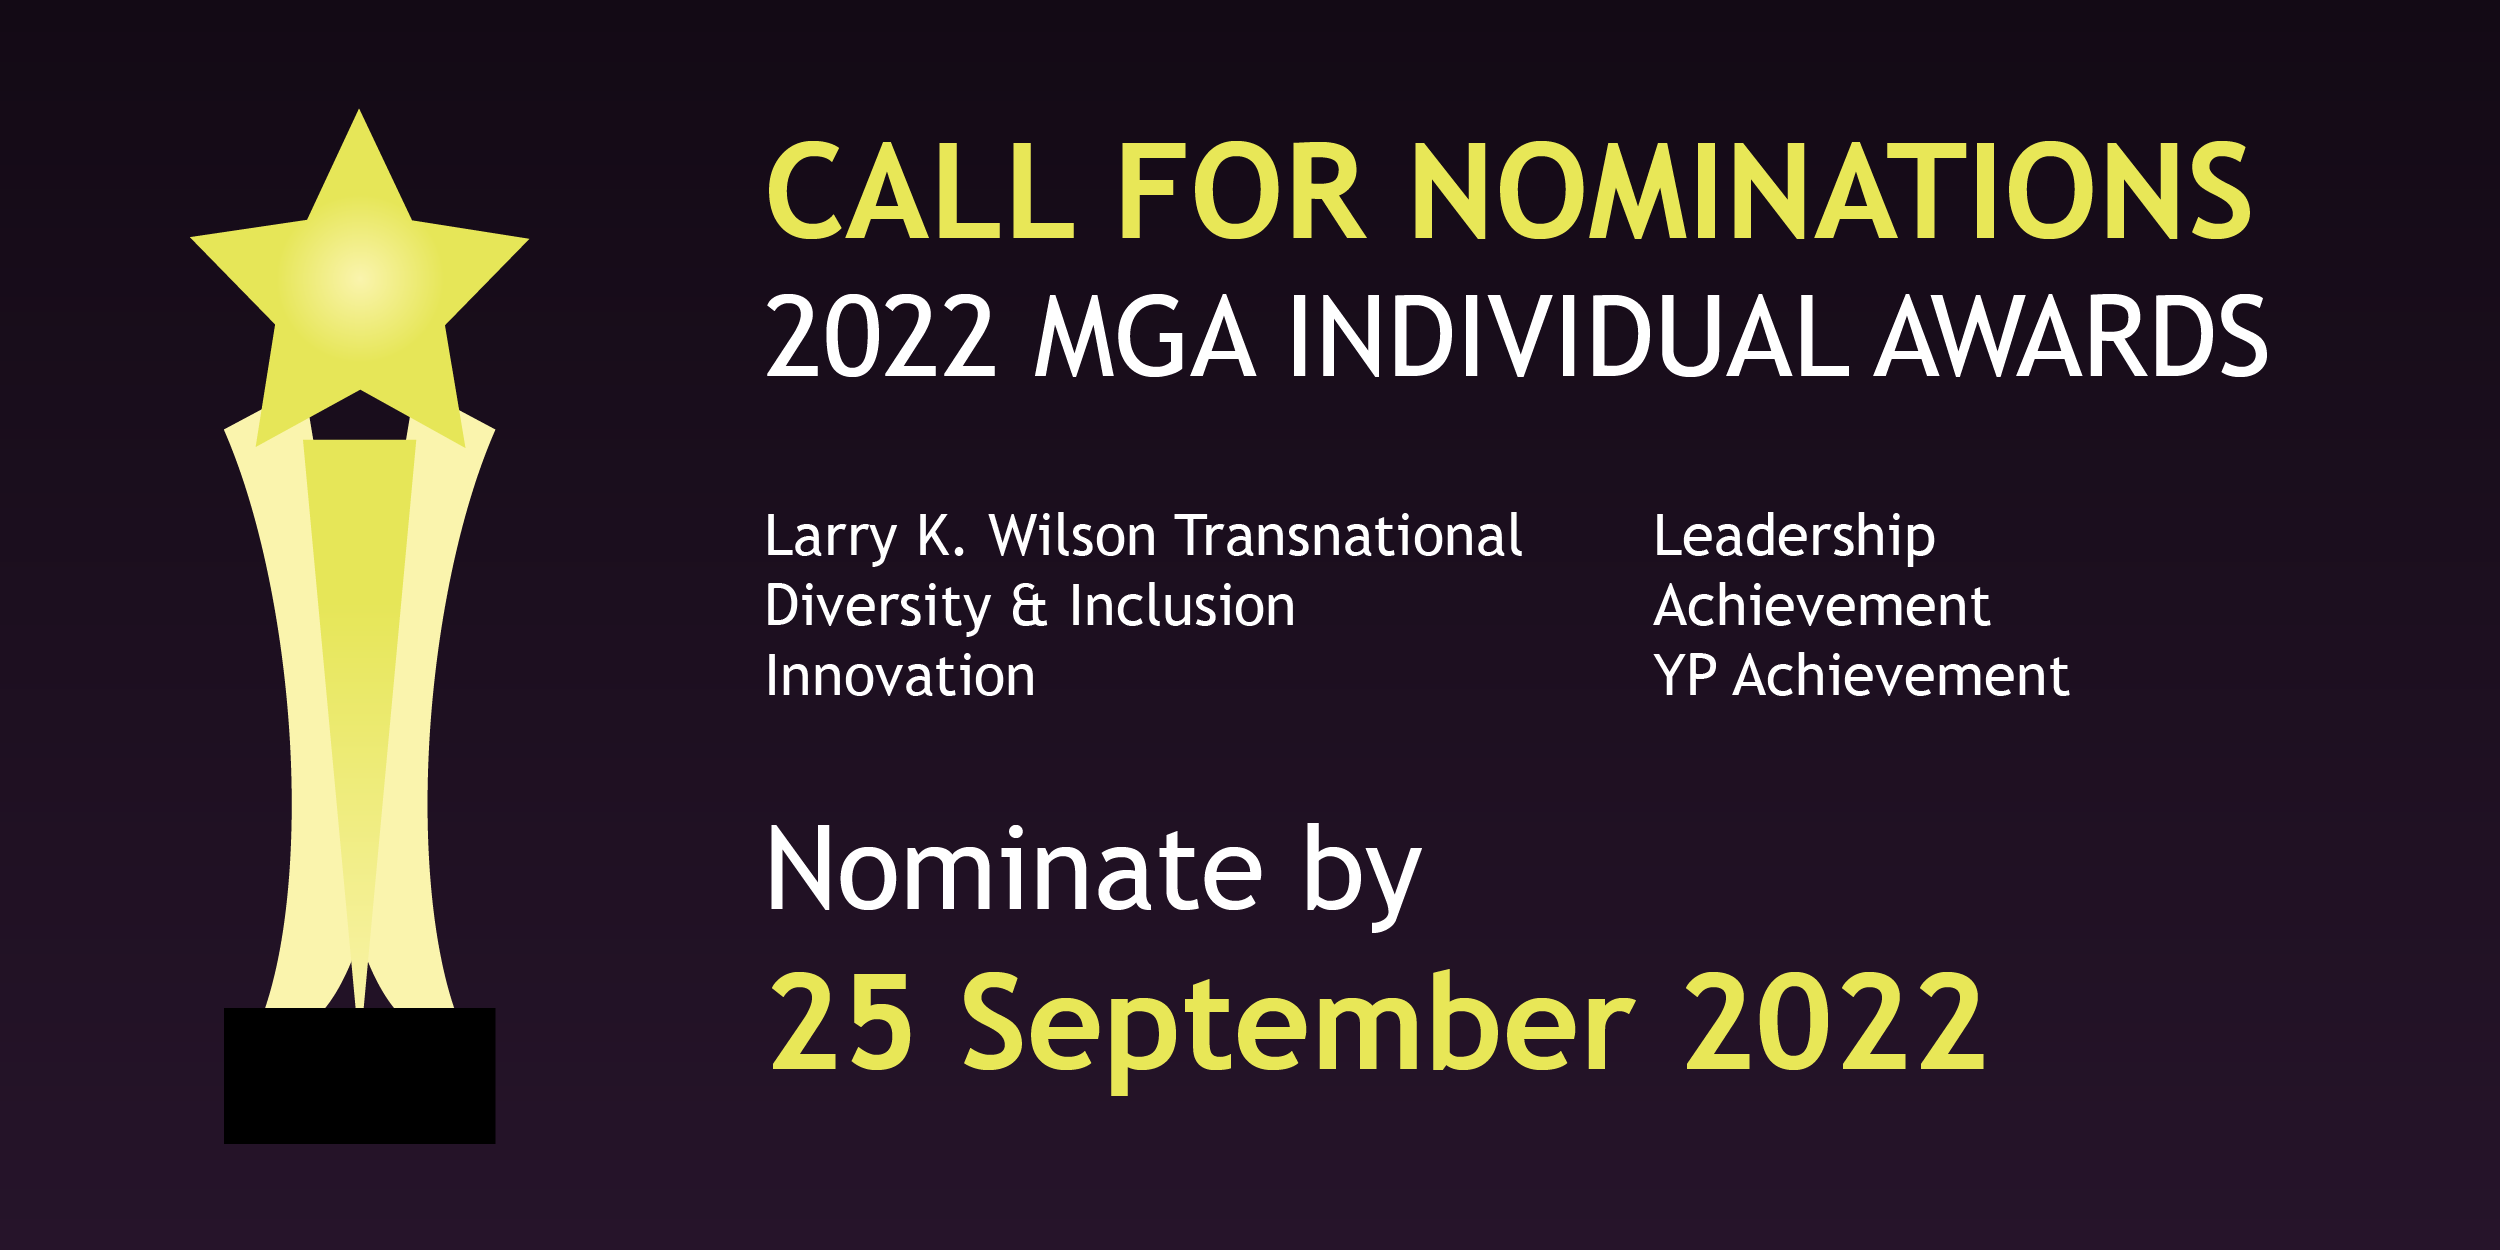 Call for Nominations, 2022 MGA Individual Awards